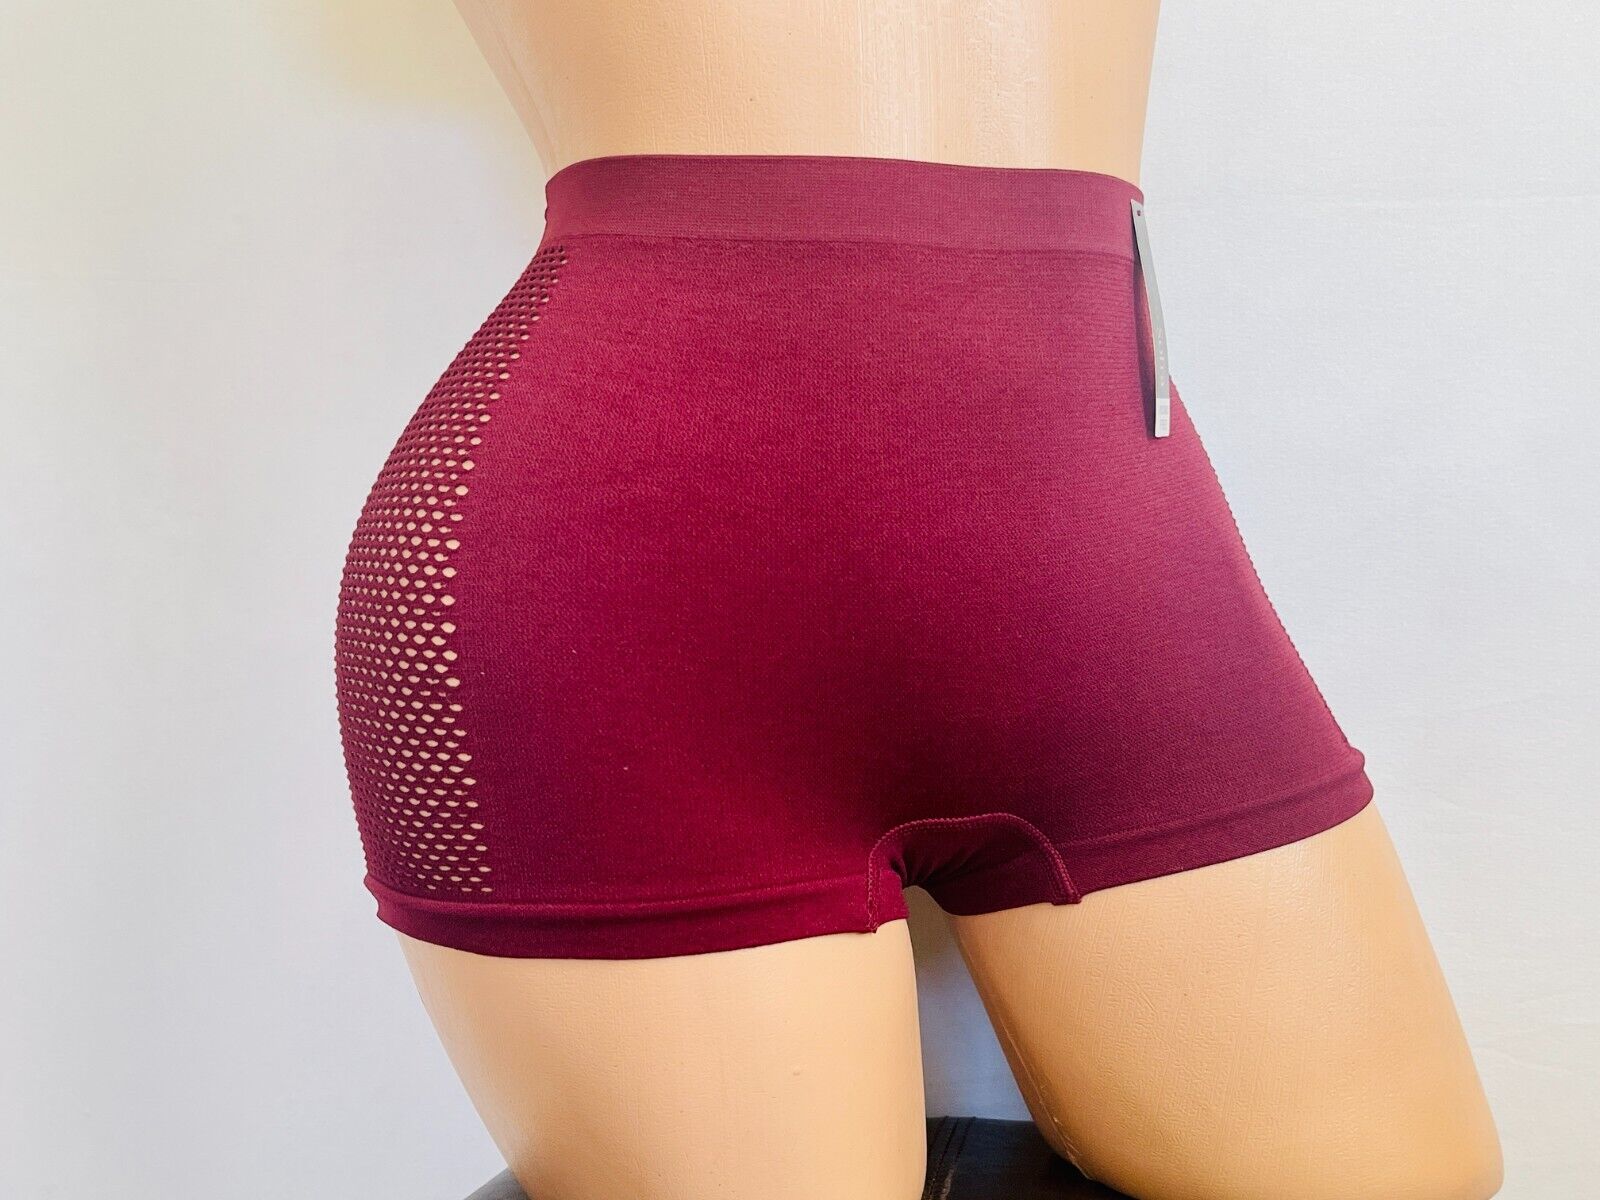 6 Boyshorts sport Active Wear Yoga Seamless Short undies shortie Underwear S-XL EVA - фотография #11